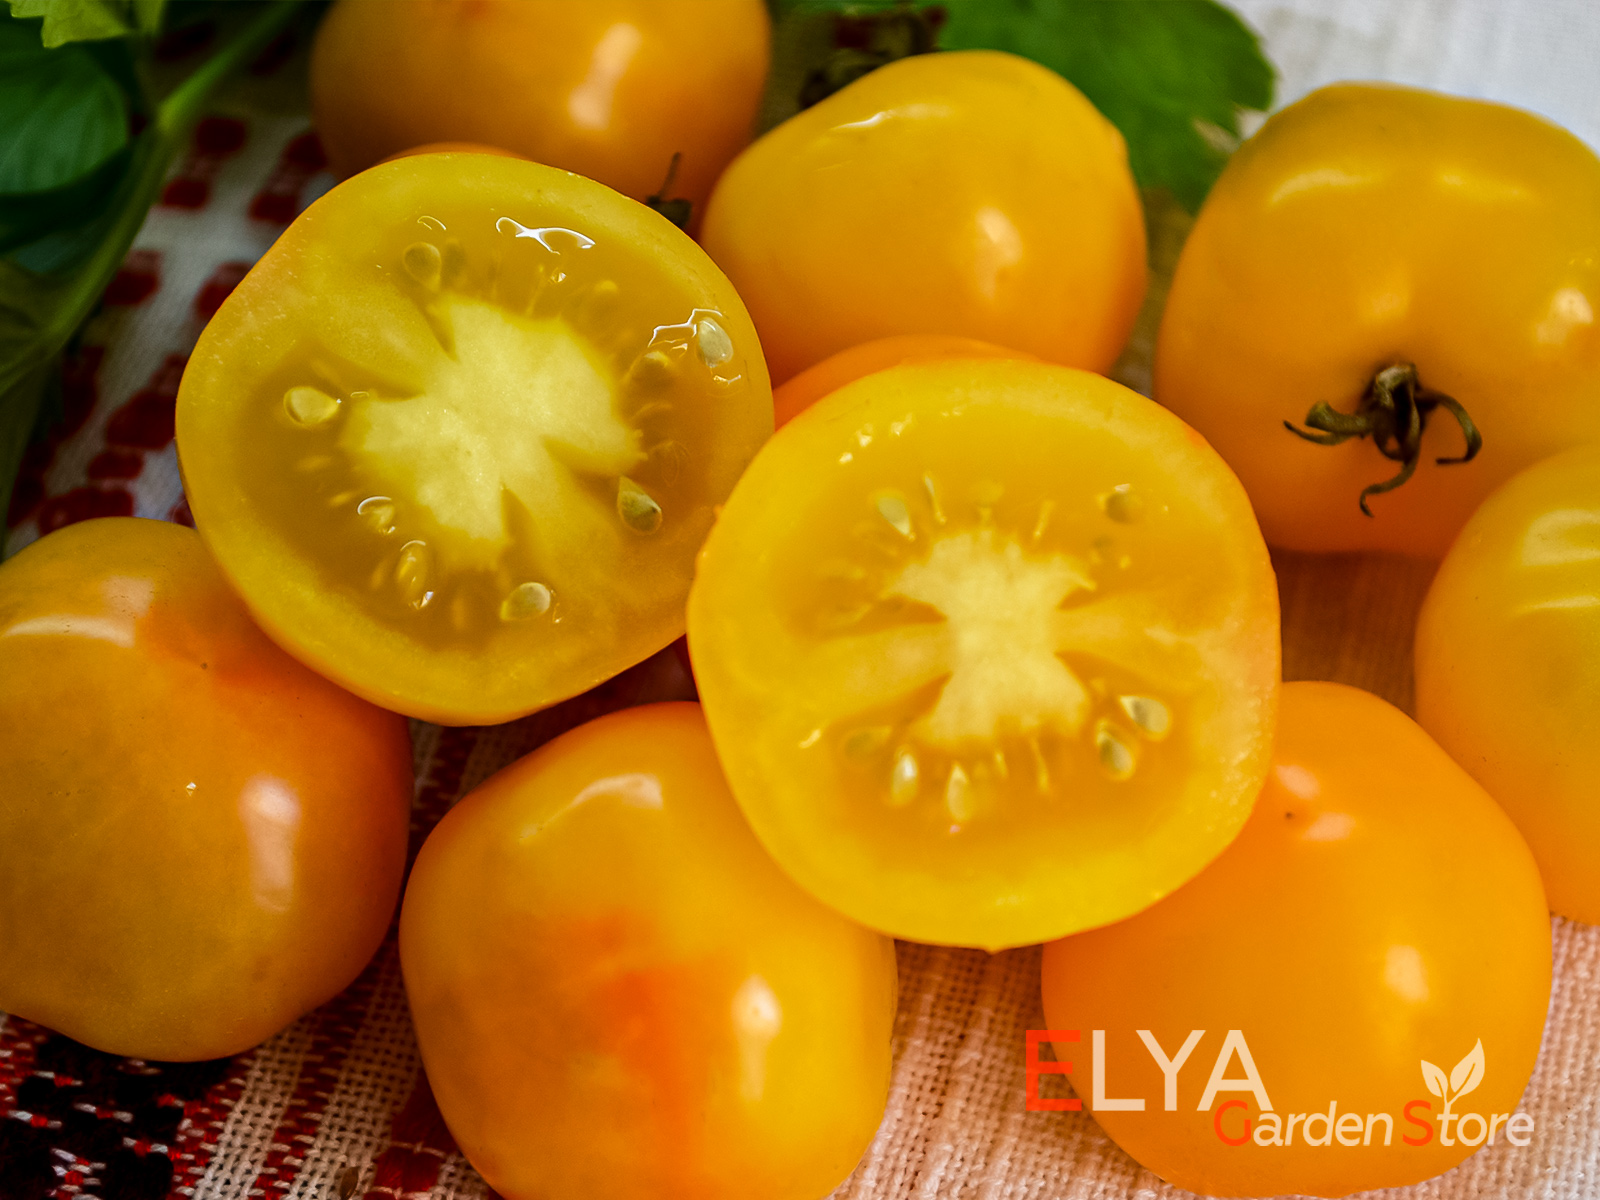 Июньсий Желтый - для раннего томата очень хороший вкус - семена в магазине Elya Garden